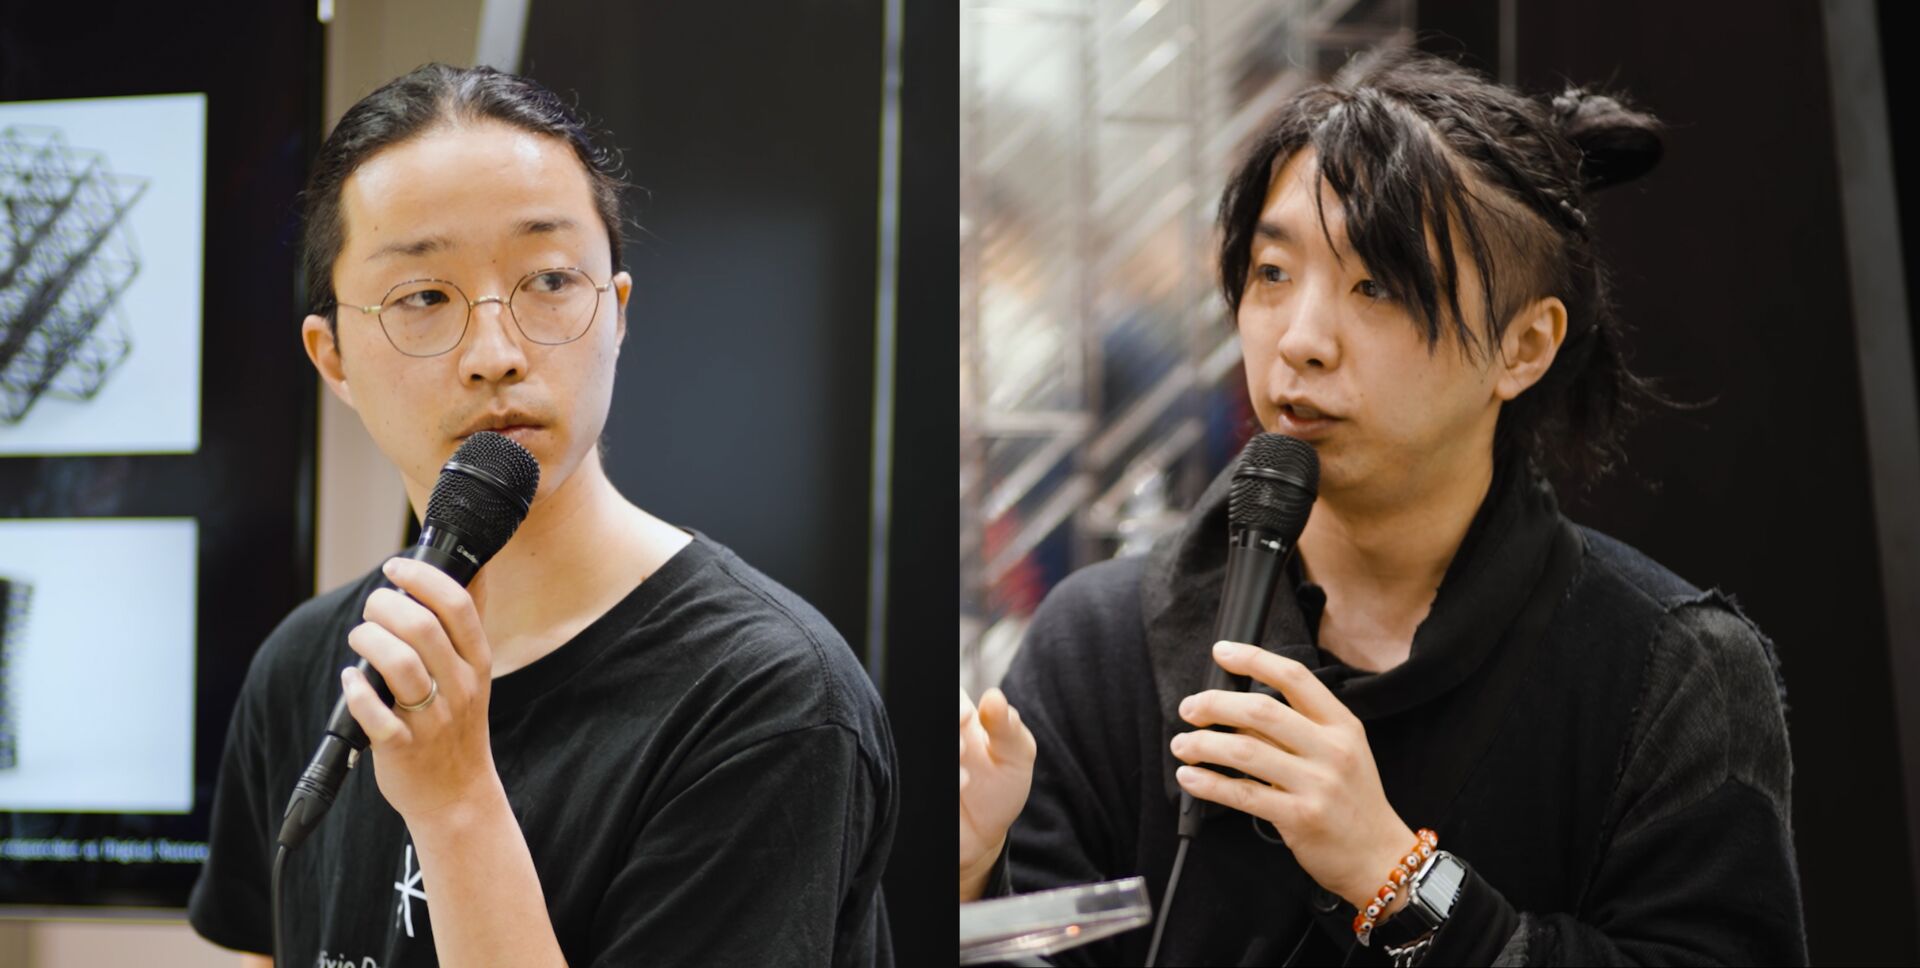 iwasemi Talk at ORGATEC TOKYO 2023